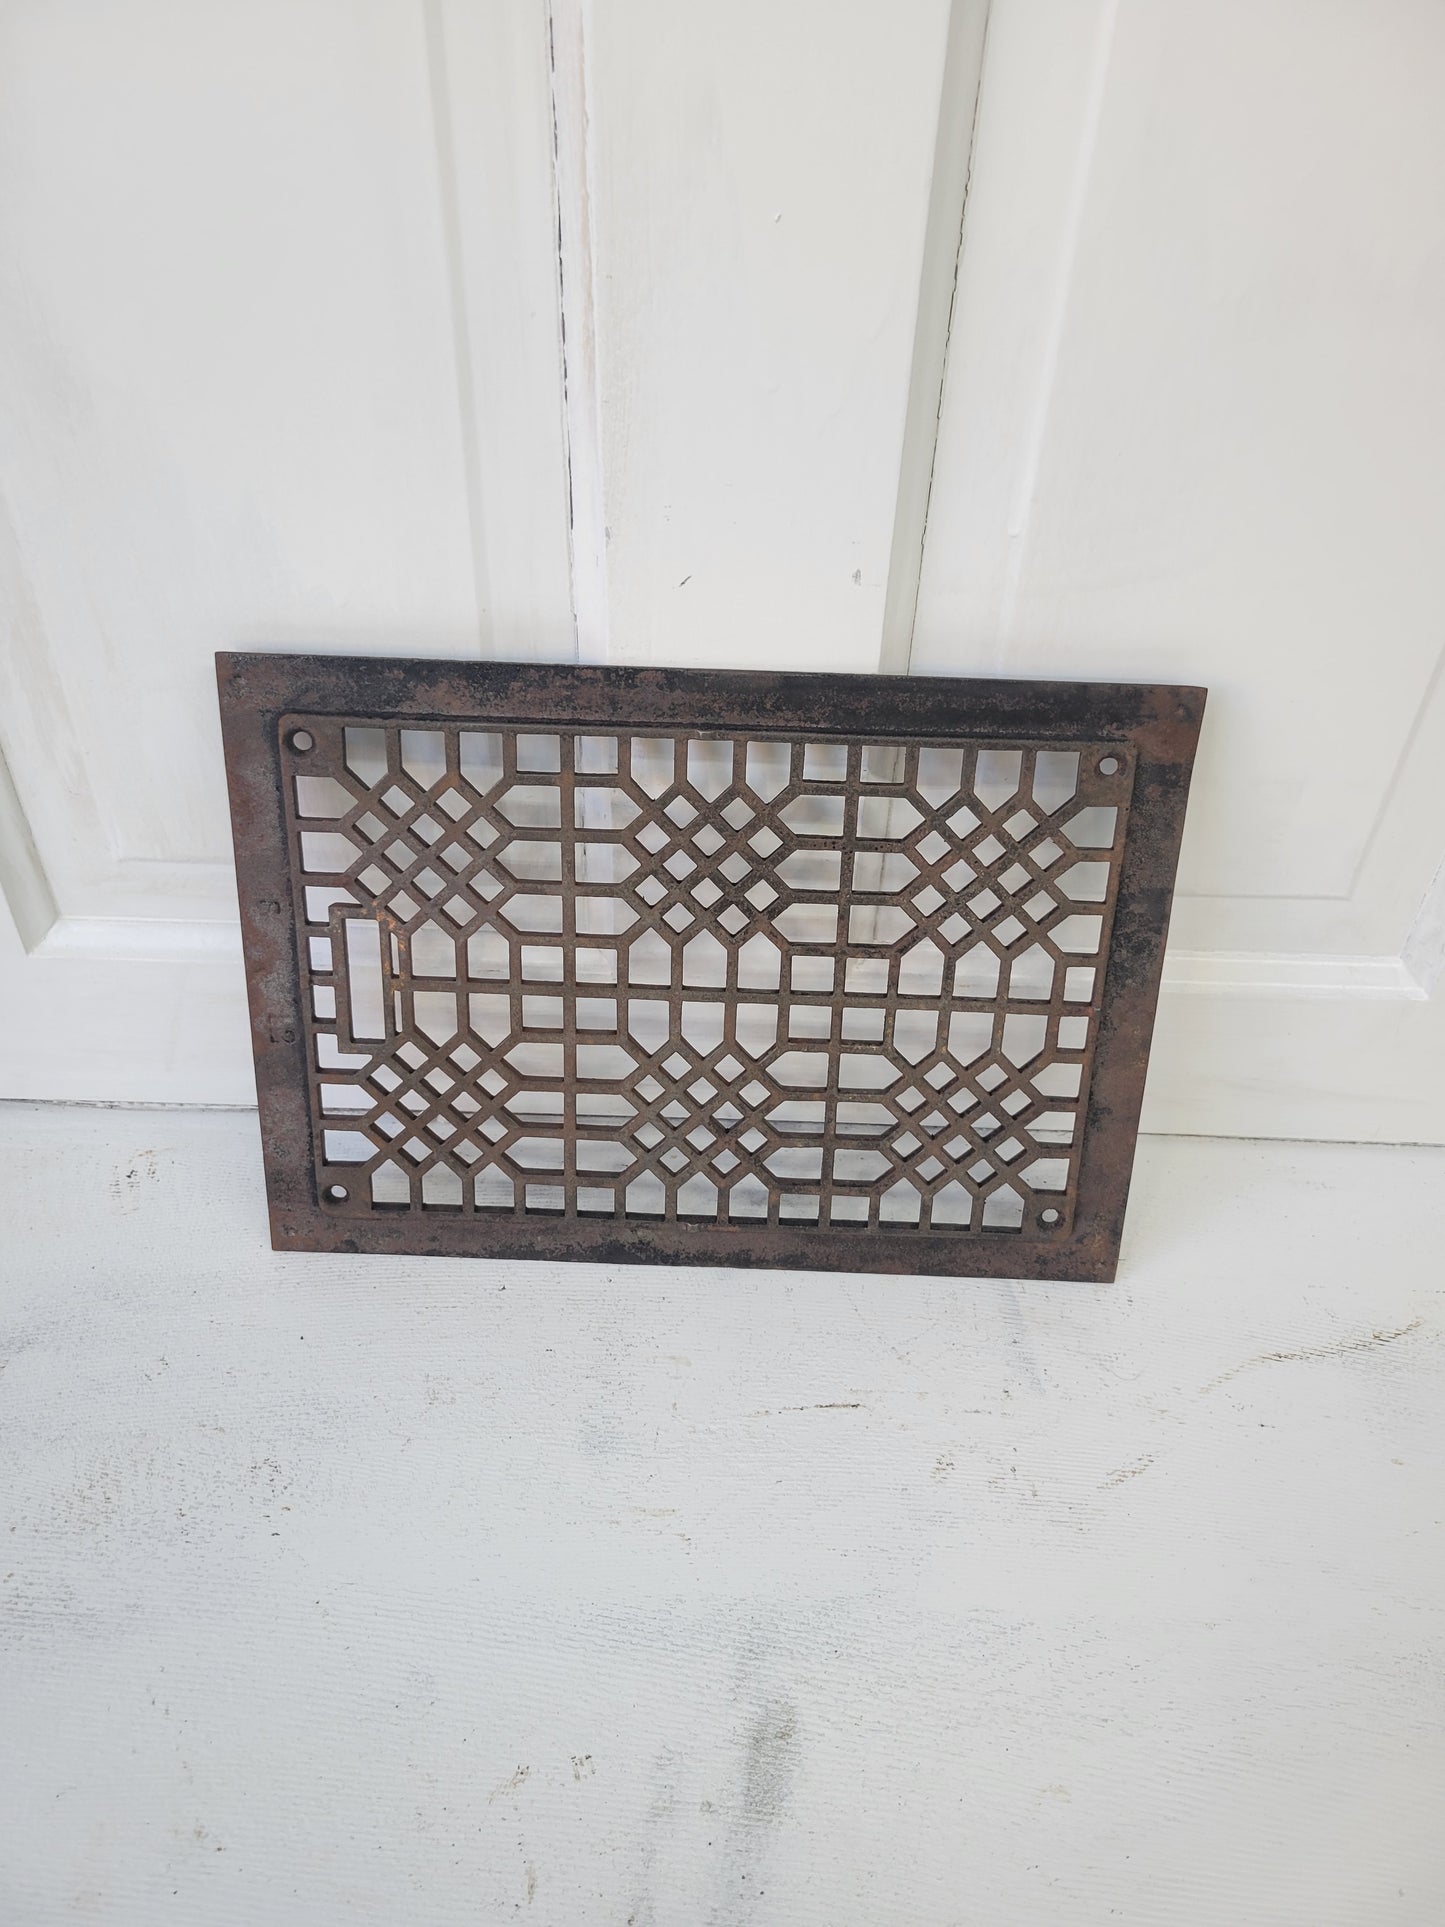 14 x 10 Ornate Iron Floor Grate, Antique Iron Vent Cover #052902